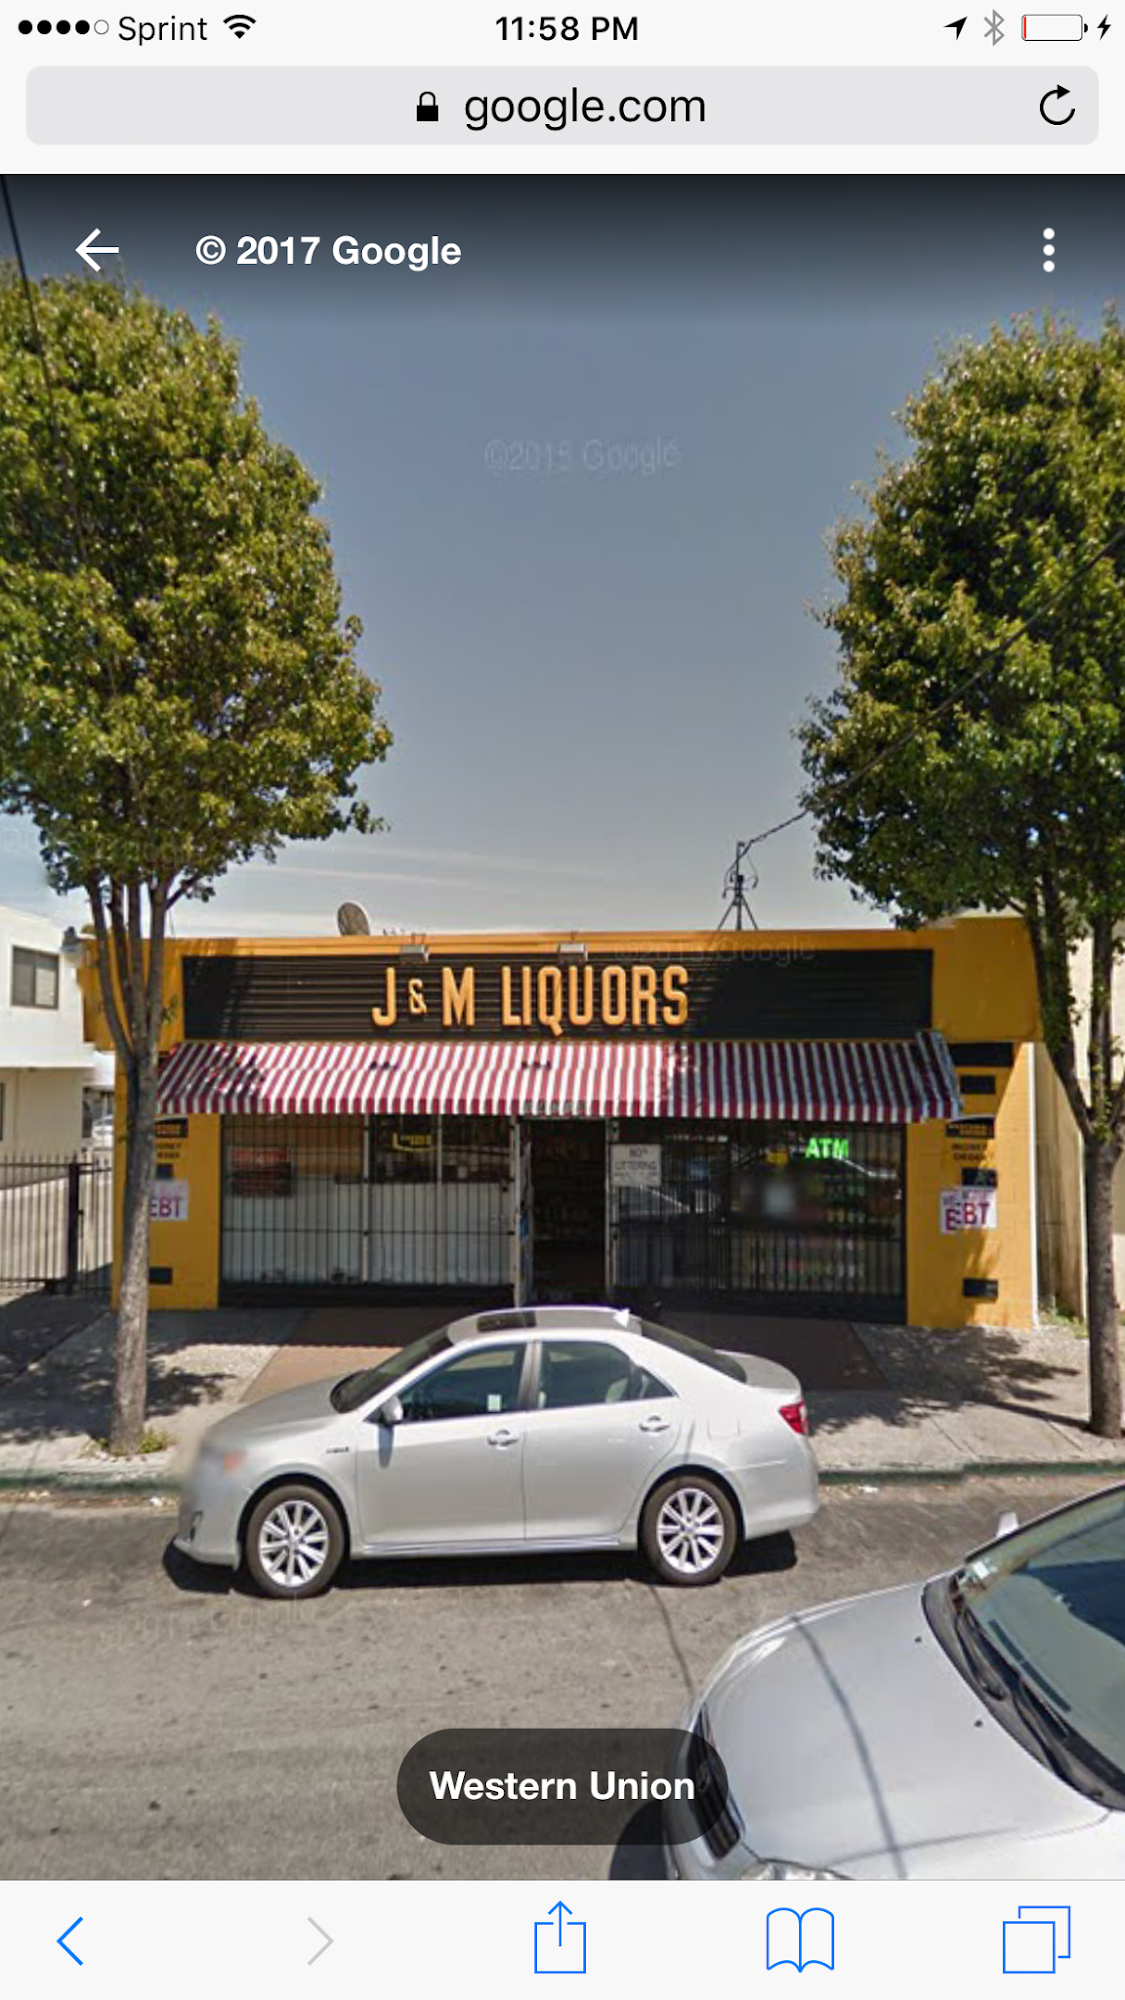 J & M Liquors